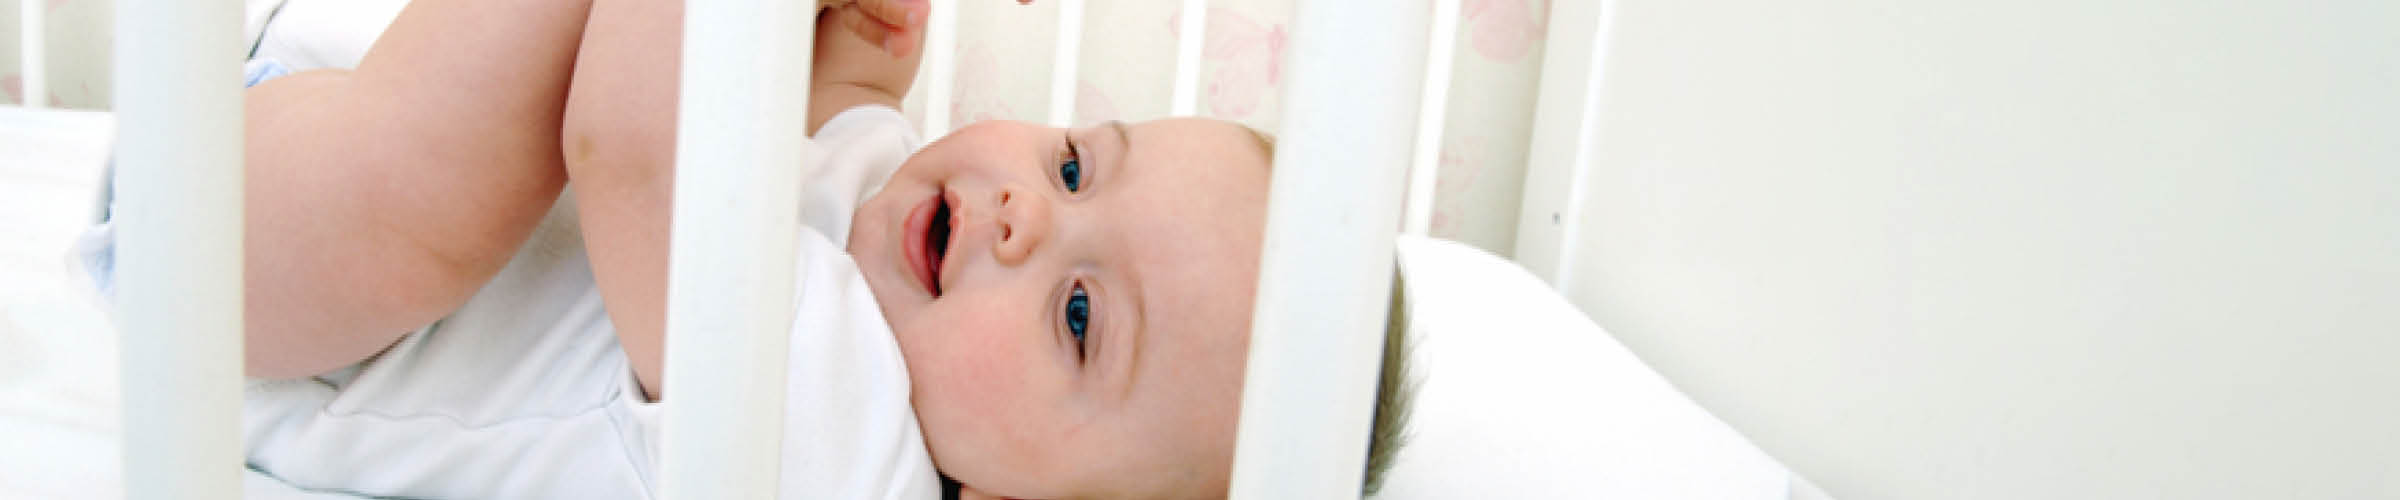 Prenatal.nl - Een matras kiezen voor kleintje: dit zijn de opties!